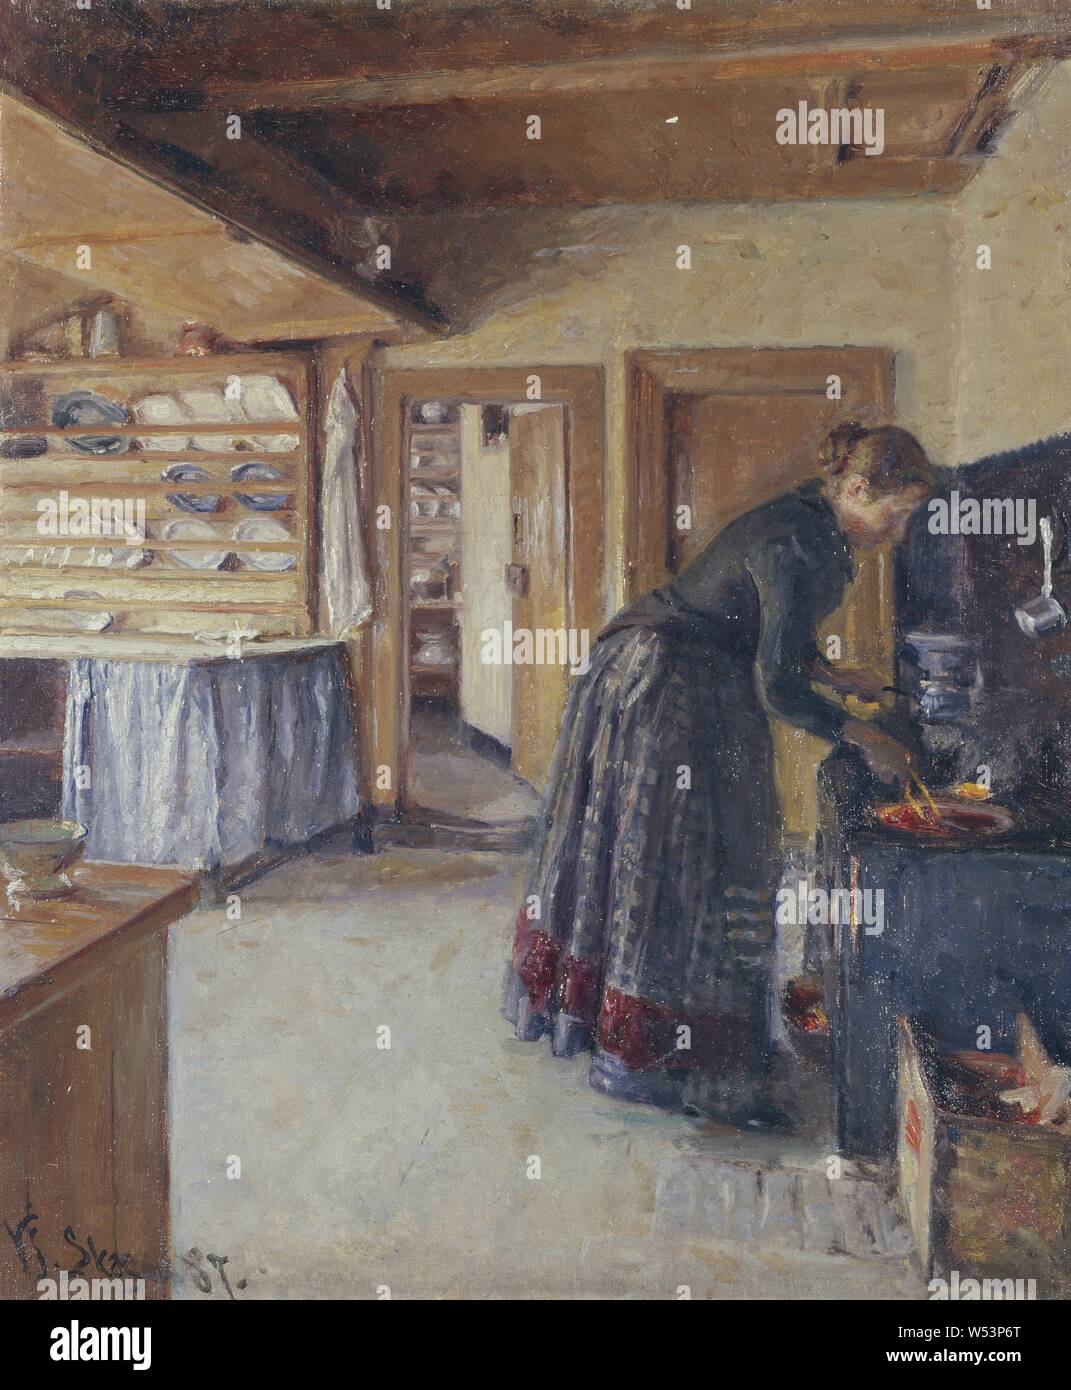 Viggo Johansen, cocina, con la esposa del artista, cocina interior con la esposa del artista, pintura, 1887, óleo sobre lienzo, altura de 61 cm (24 pulgadas) de ancho, 49 cm (19,2 pulgadas), firmado, VJ Skagen 87. Foto de stock